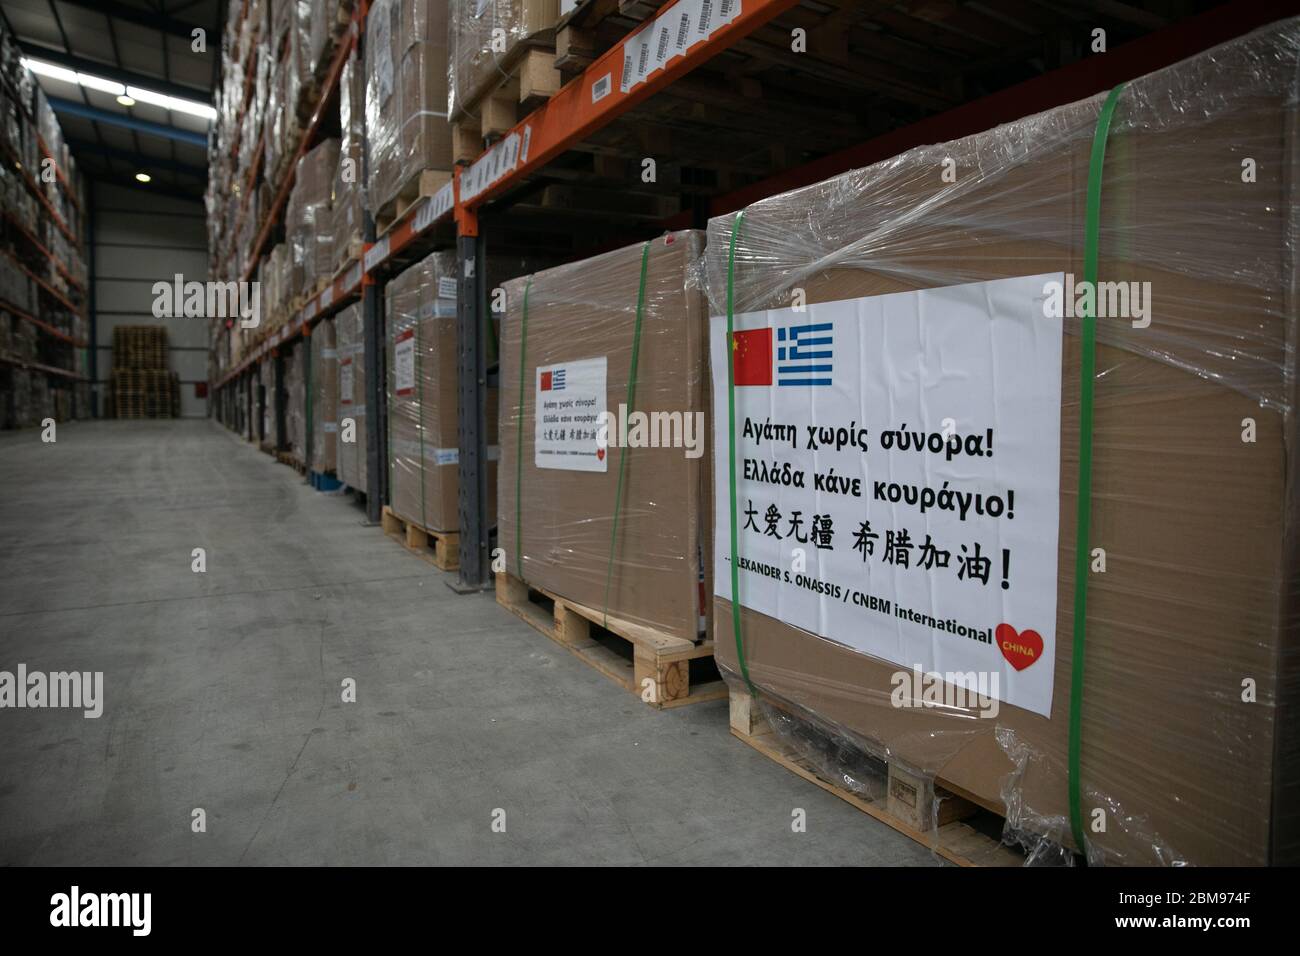 (200507) -- OINOI (GRIECHENLAND), 7. Mai 2020 (Xinhua) -- Kisten mit medizinischen Hilfsgütern, die Griechenland aus China gespendet wurden, werden am 7. Mai 2020 im Zolllager von Oinoi, 45 km nordwestlich von Athen, Griechenland, gesehen. Griechenland hat bisher Spenden im Wert von mehr als 89 Millionen Euro (96.4 Millionen US-Dollar) im Kampf gegen COVID-19 erhalten, teilte der griechische Gesundheitsminister Vassilis Kikilias am Donnerstag mit und bedankte sich bei Ländern, darunter China, sowie Organisationen, Unternehmen und Einzelpersonen für die kritische Hilfe. (Foto von Lefteris Partsalis/Xinhua) Stockfoto